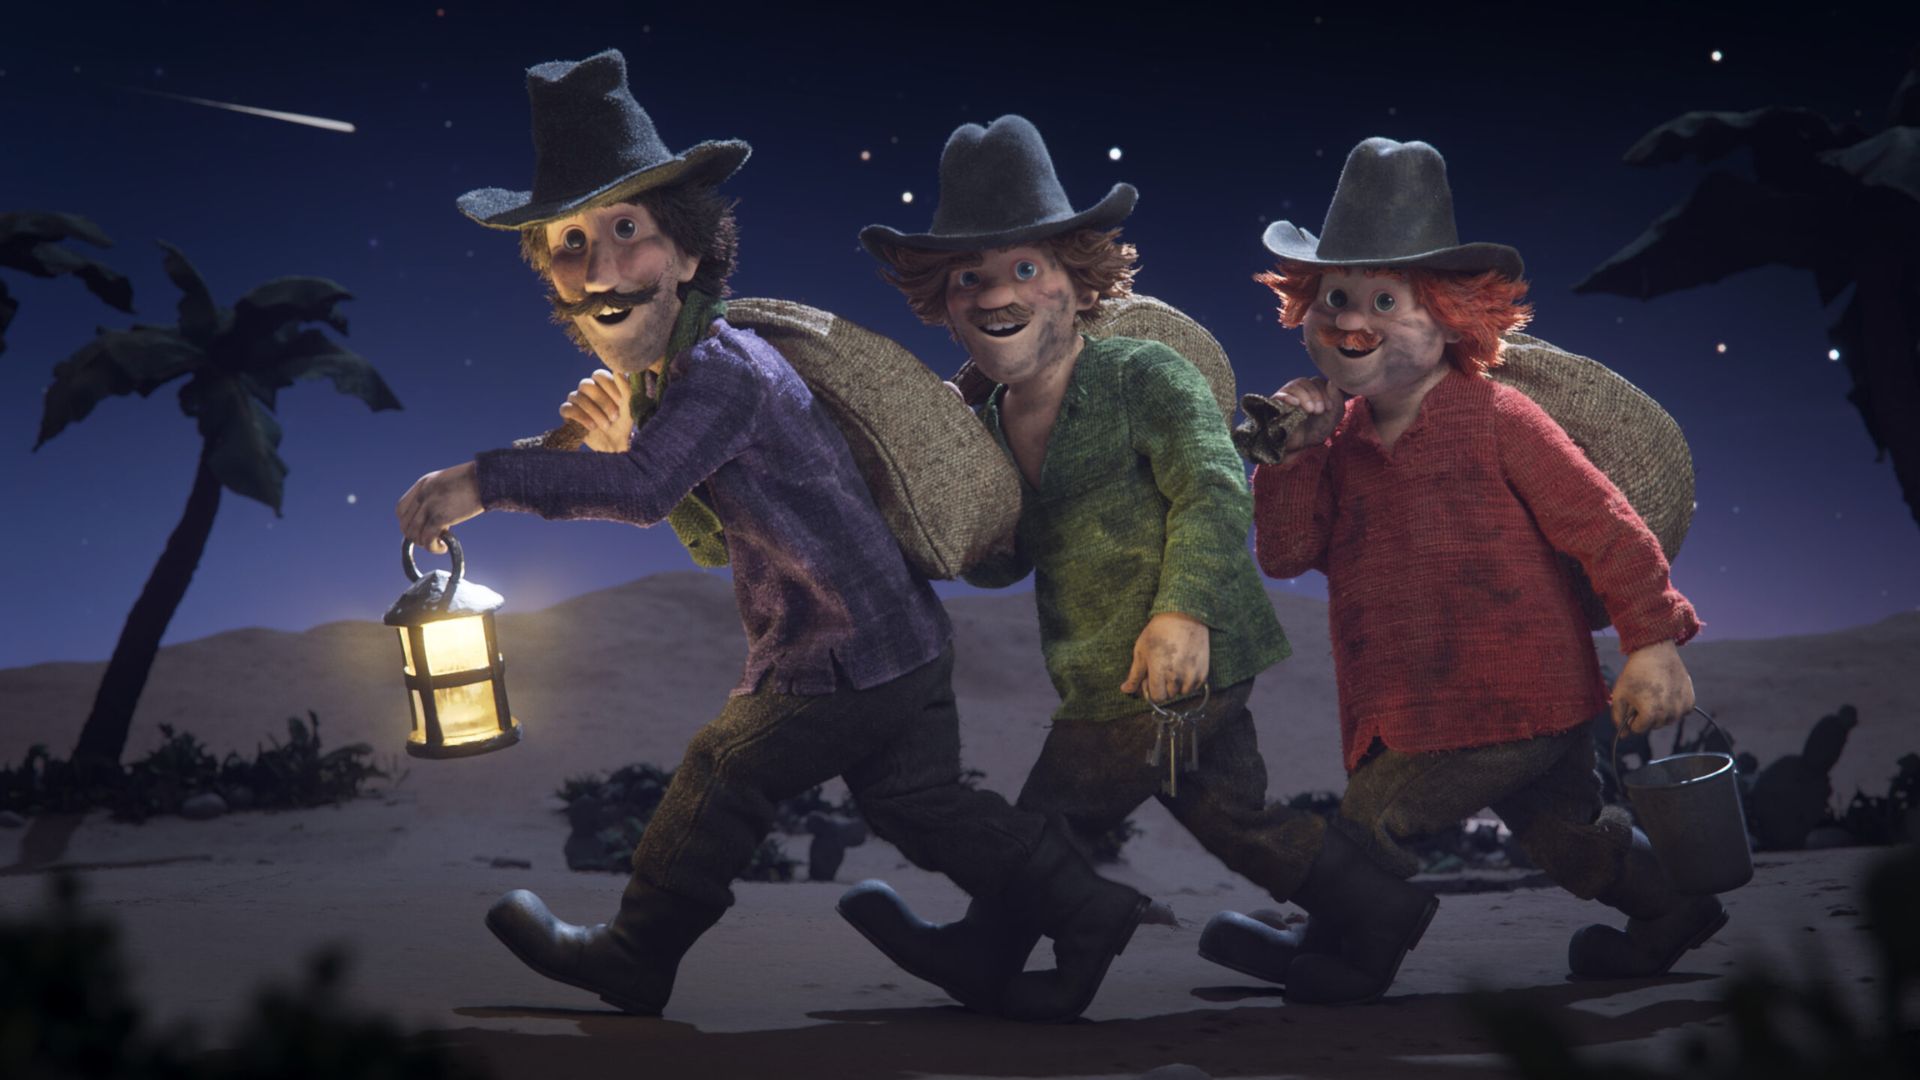 Kadr z bajki z trójką bohaterów skradających się nocą.